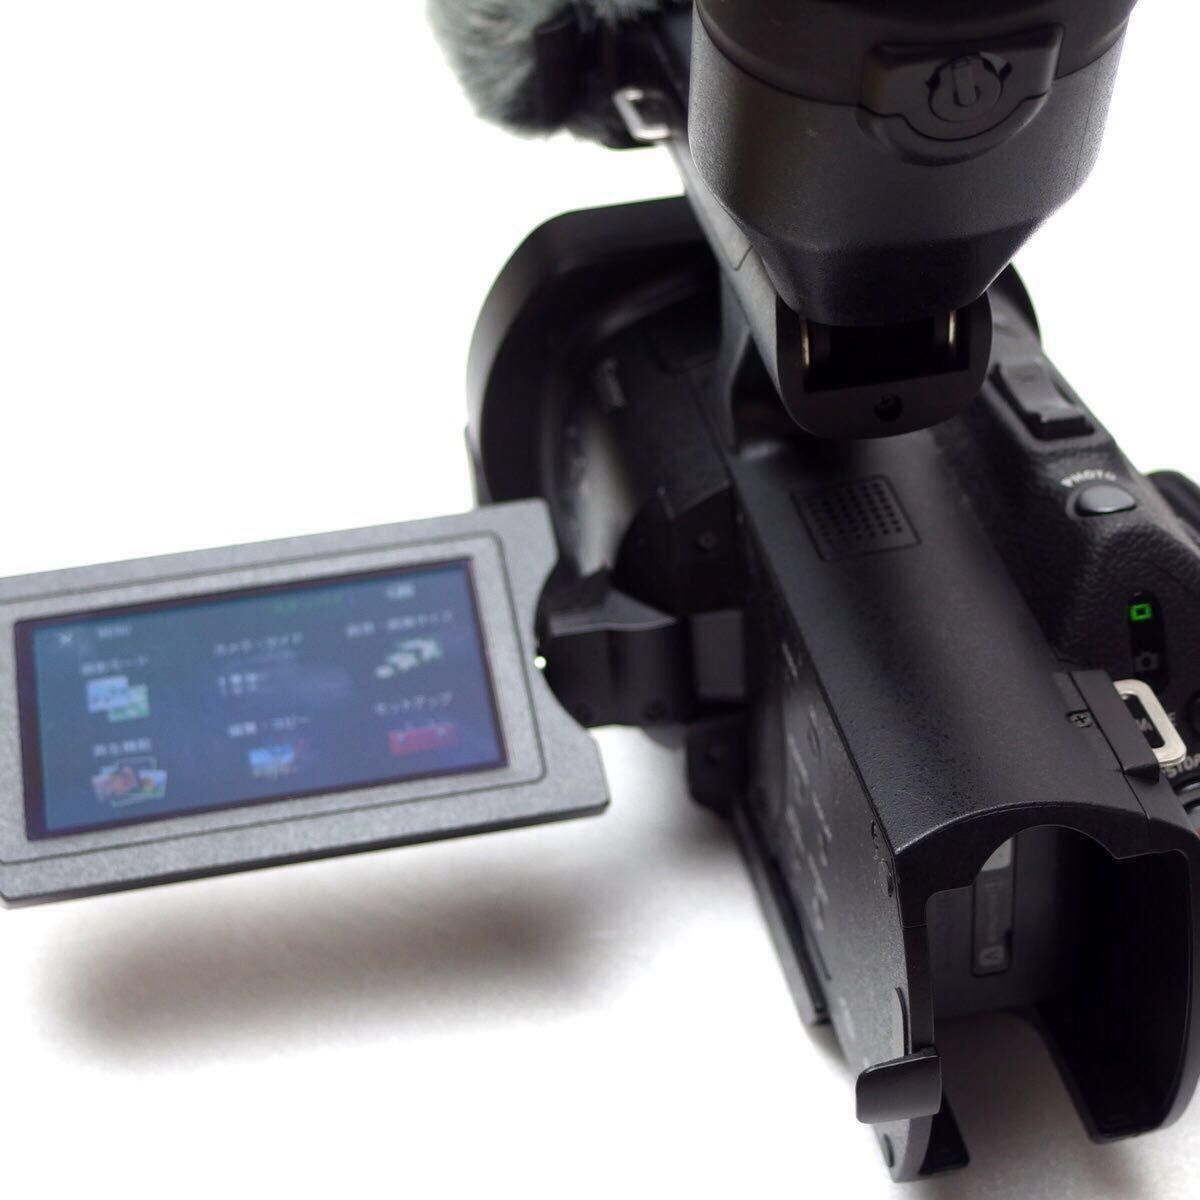 本日限定価格 SONY NEX-VG900 Eマウント ビデオカメラ 豪華オマケ付